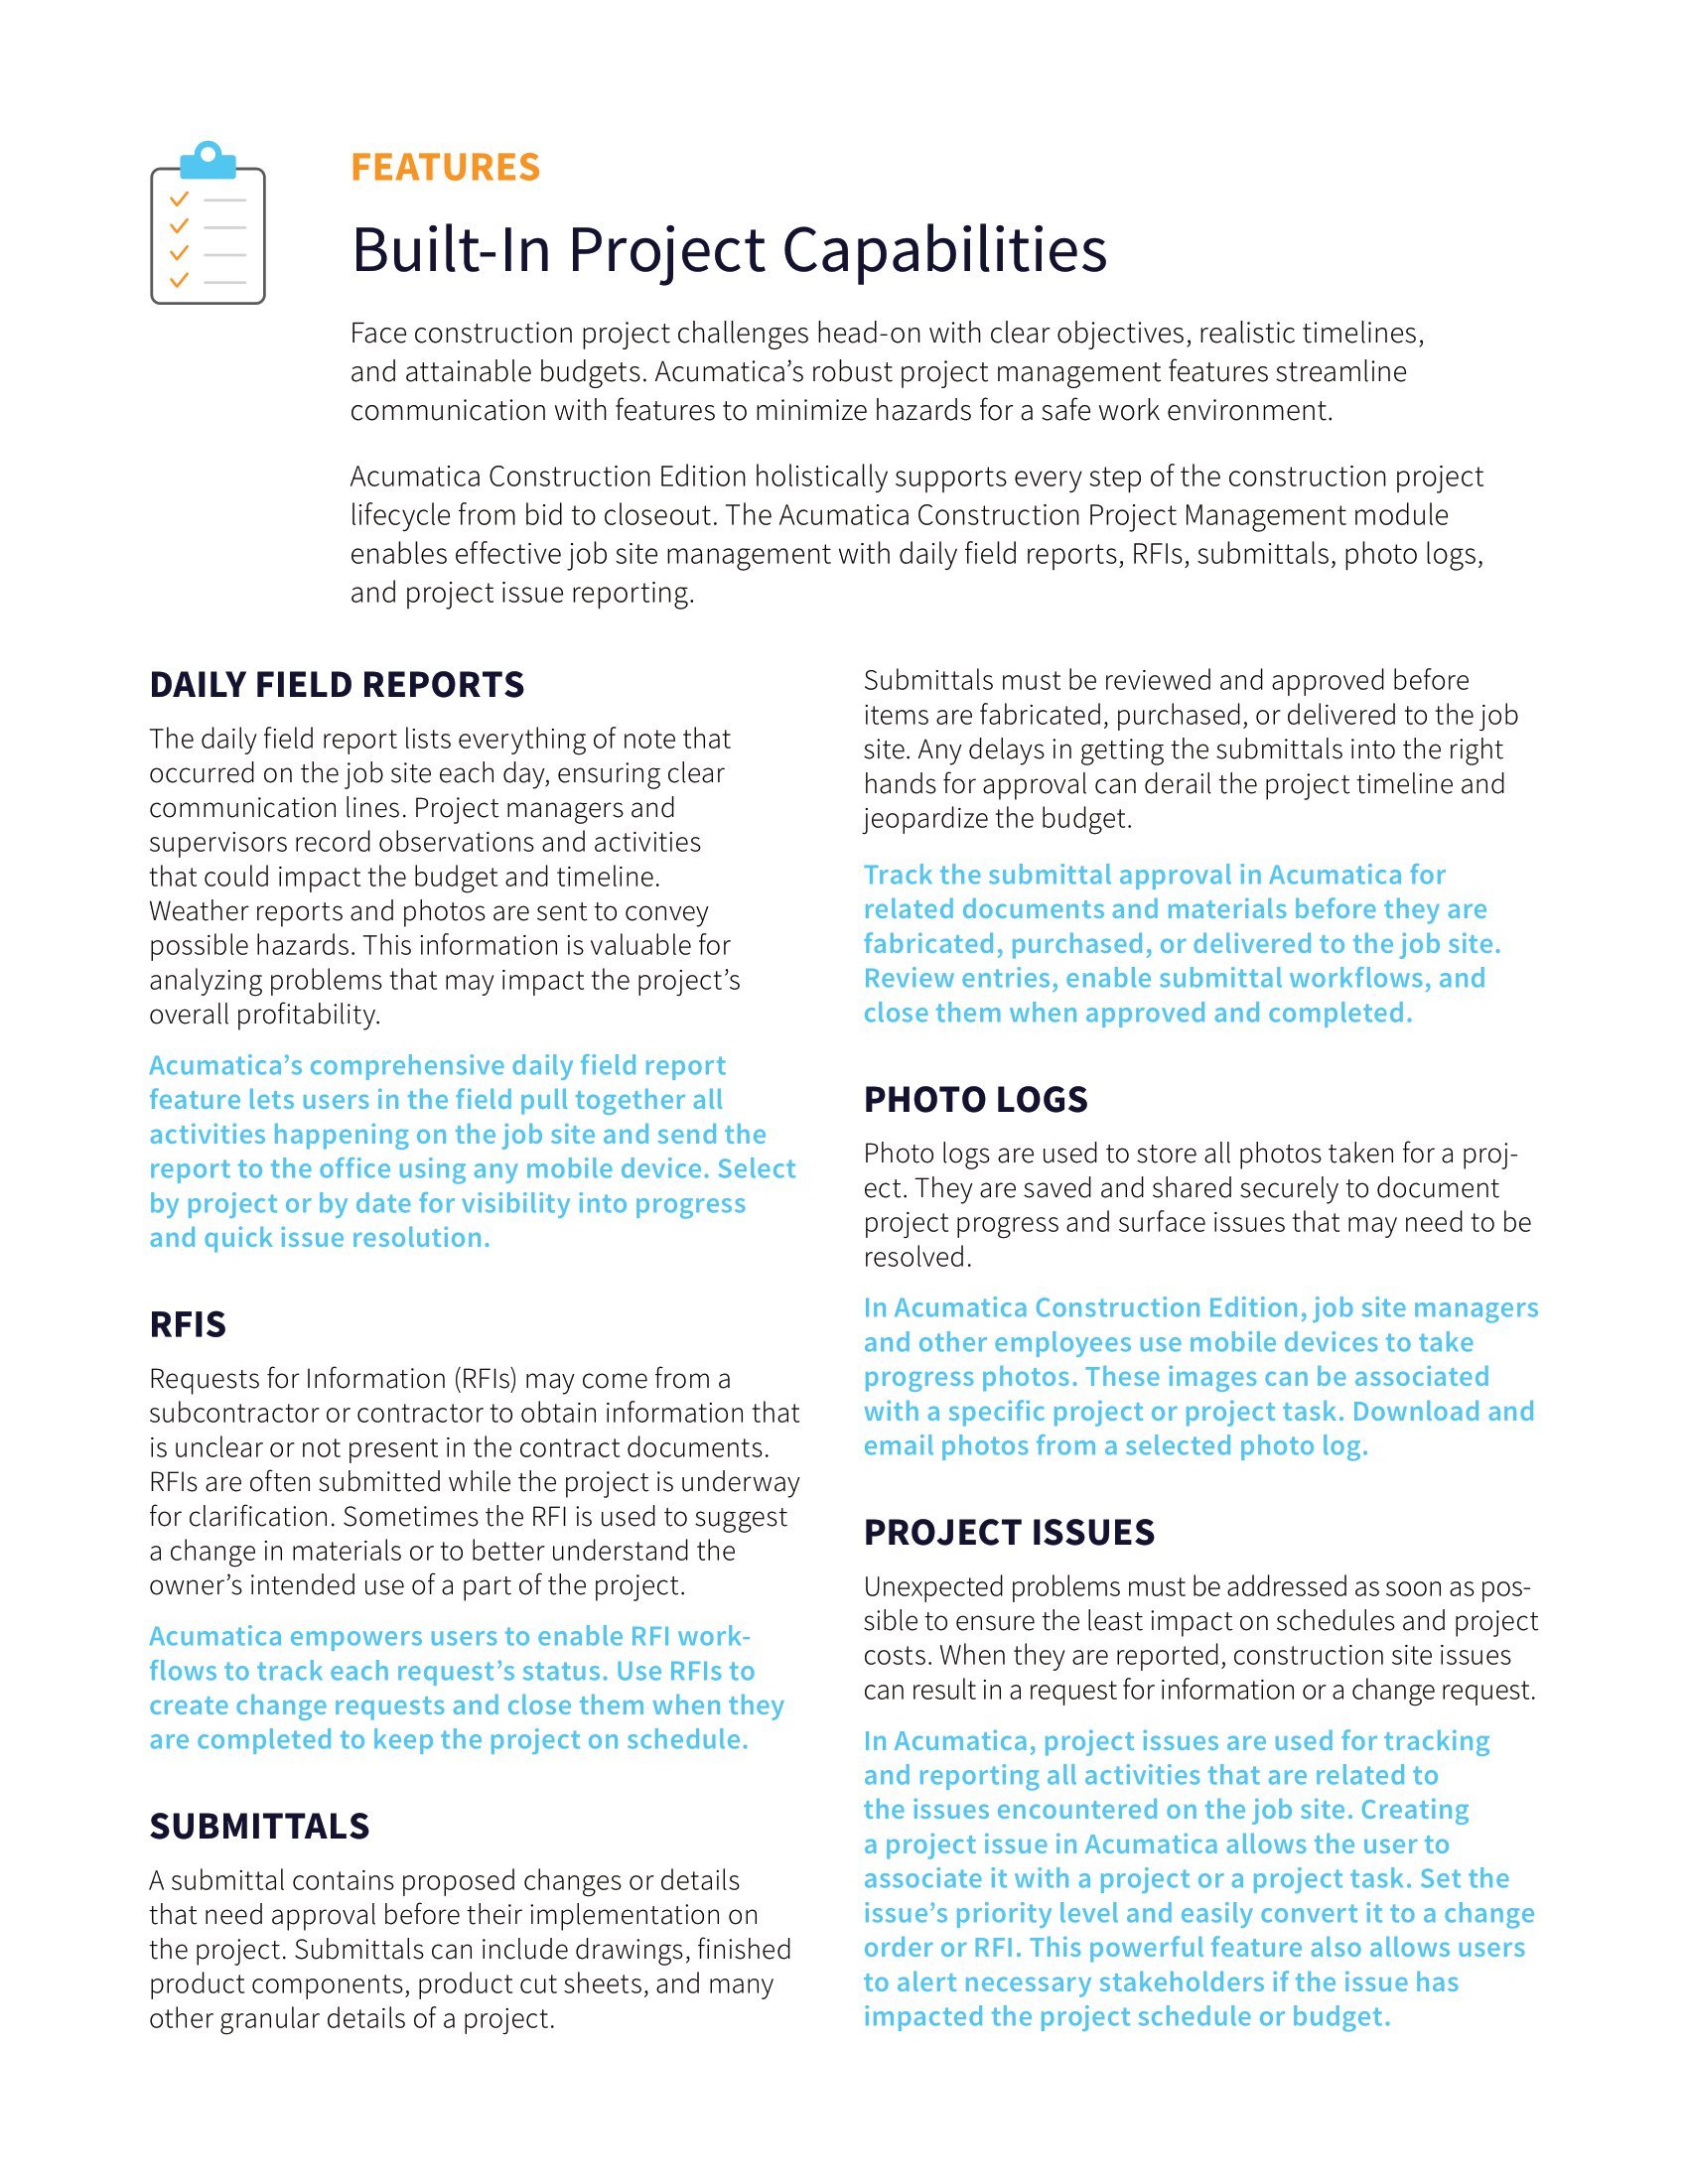 ¿Qué necesitan los gestores de proyectos de construcción para tener éxito? Un sistema centralizado y ampliable. página 2